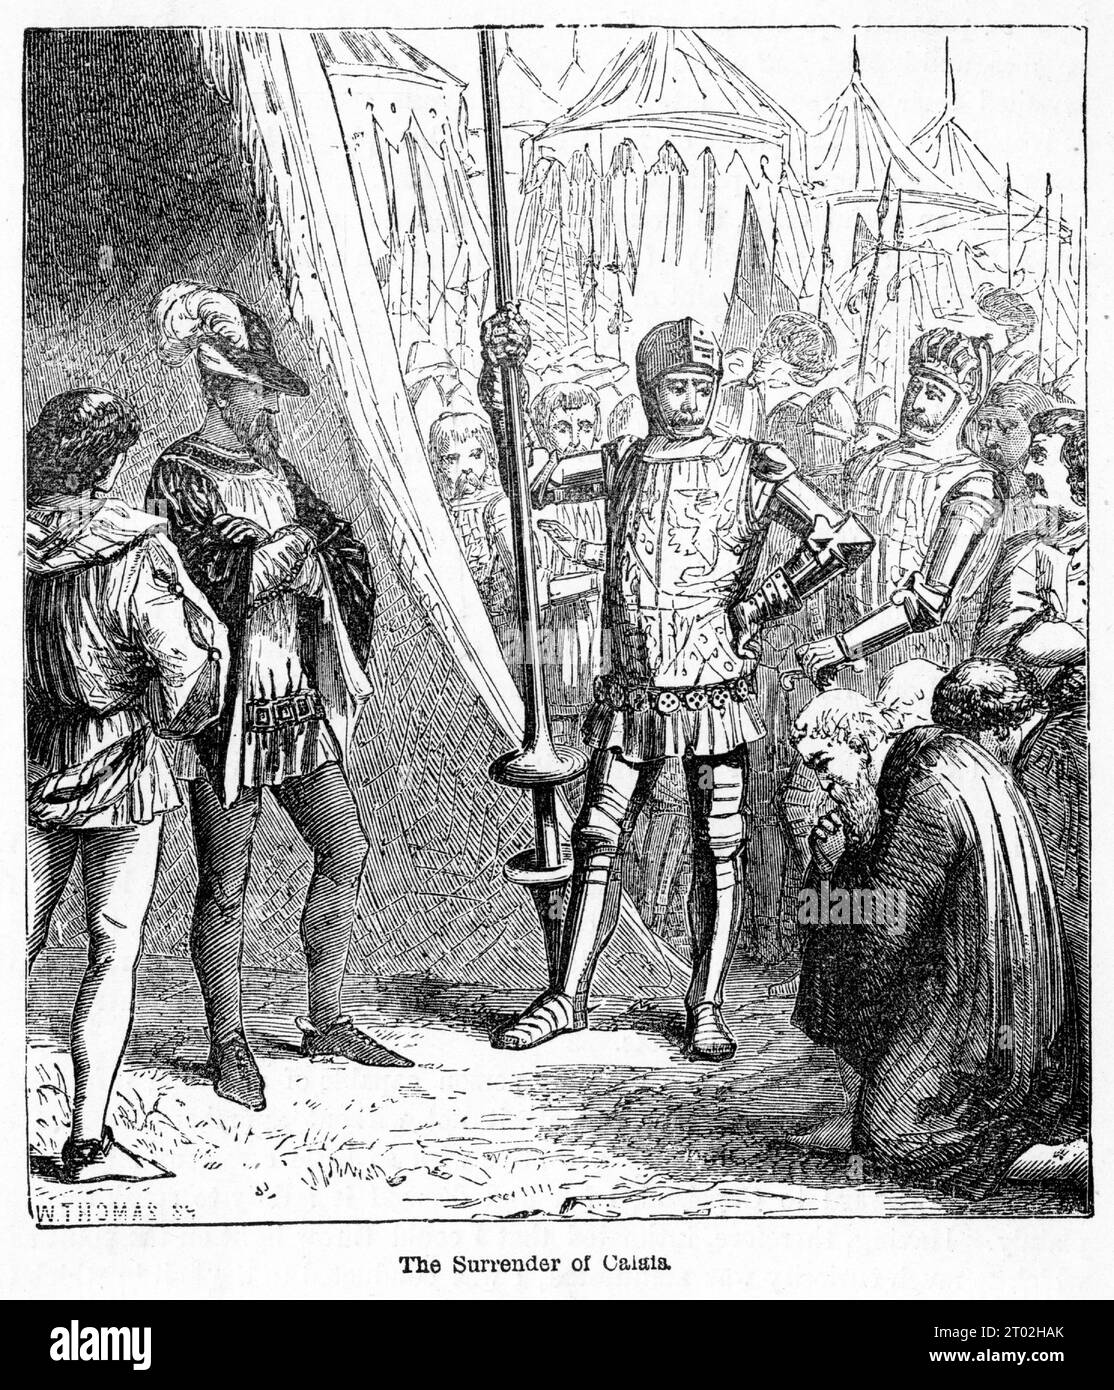 Gravure d'une scène de la vie du Prince Noir, Édouard de Woodstock, considéré comme modèle de chevalerie et l'un des plus grands chevaliers de son âge. Banque D'Images